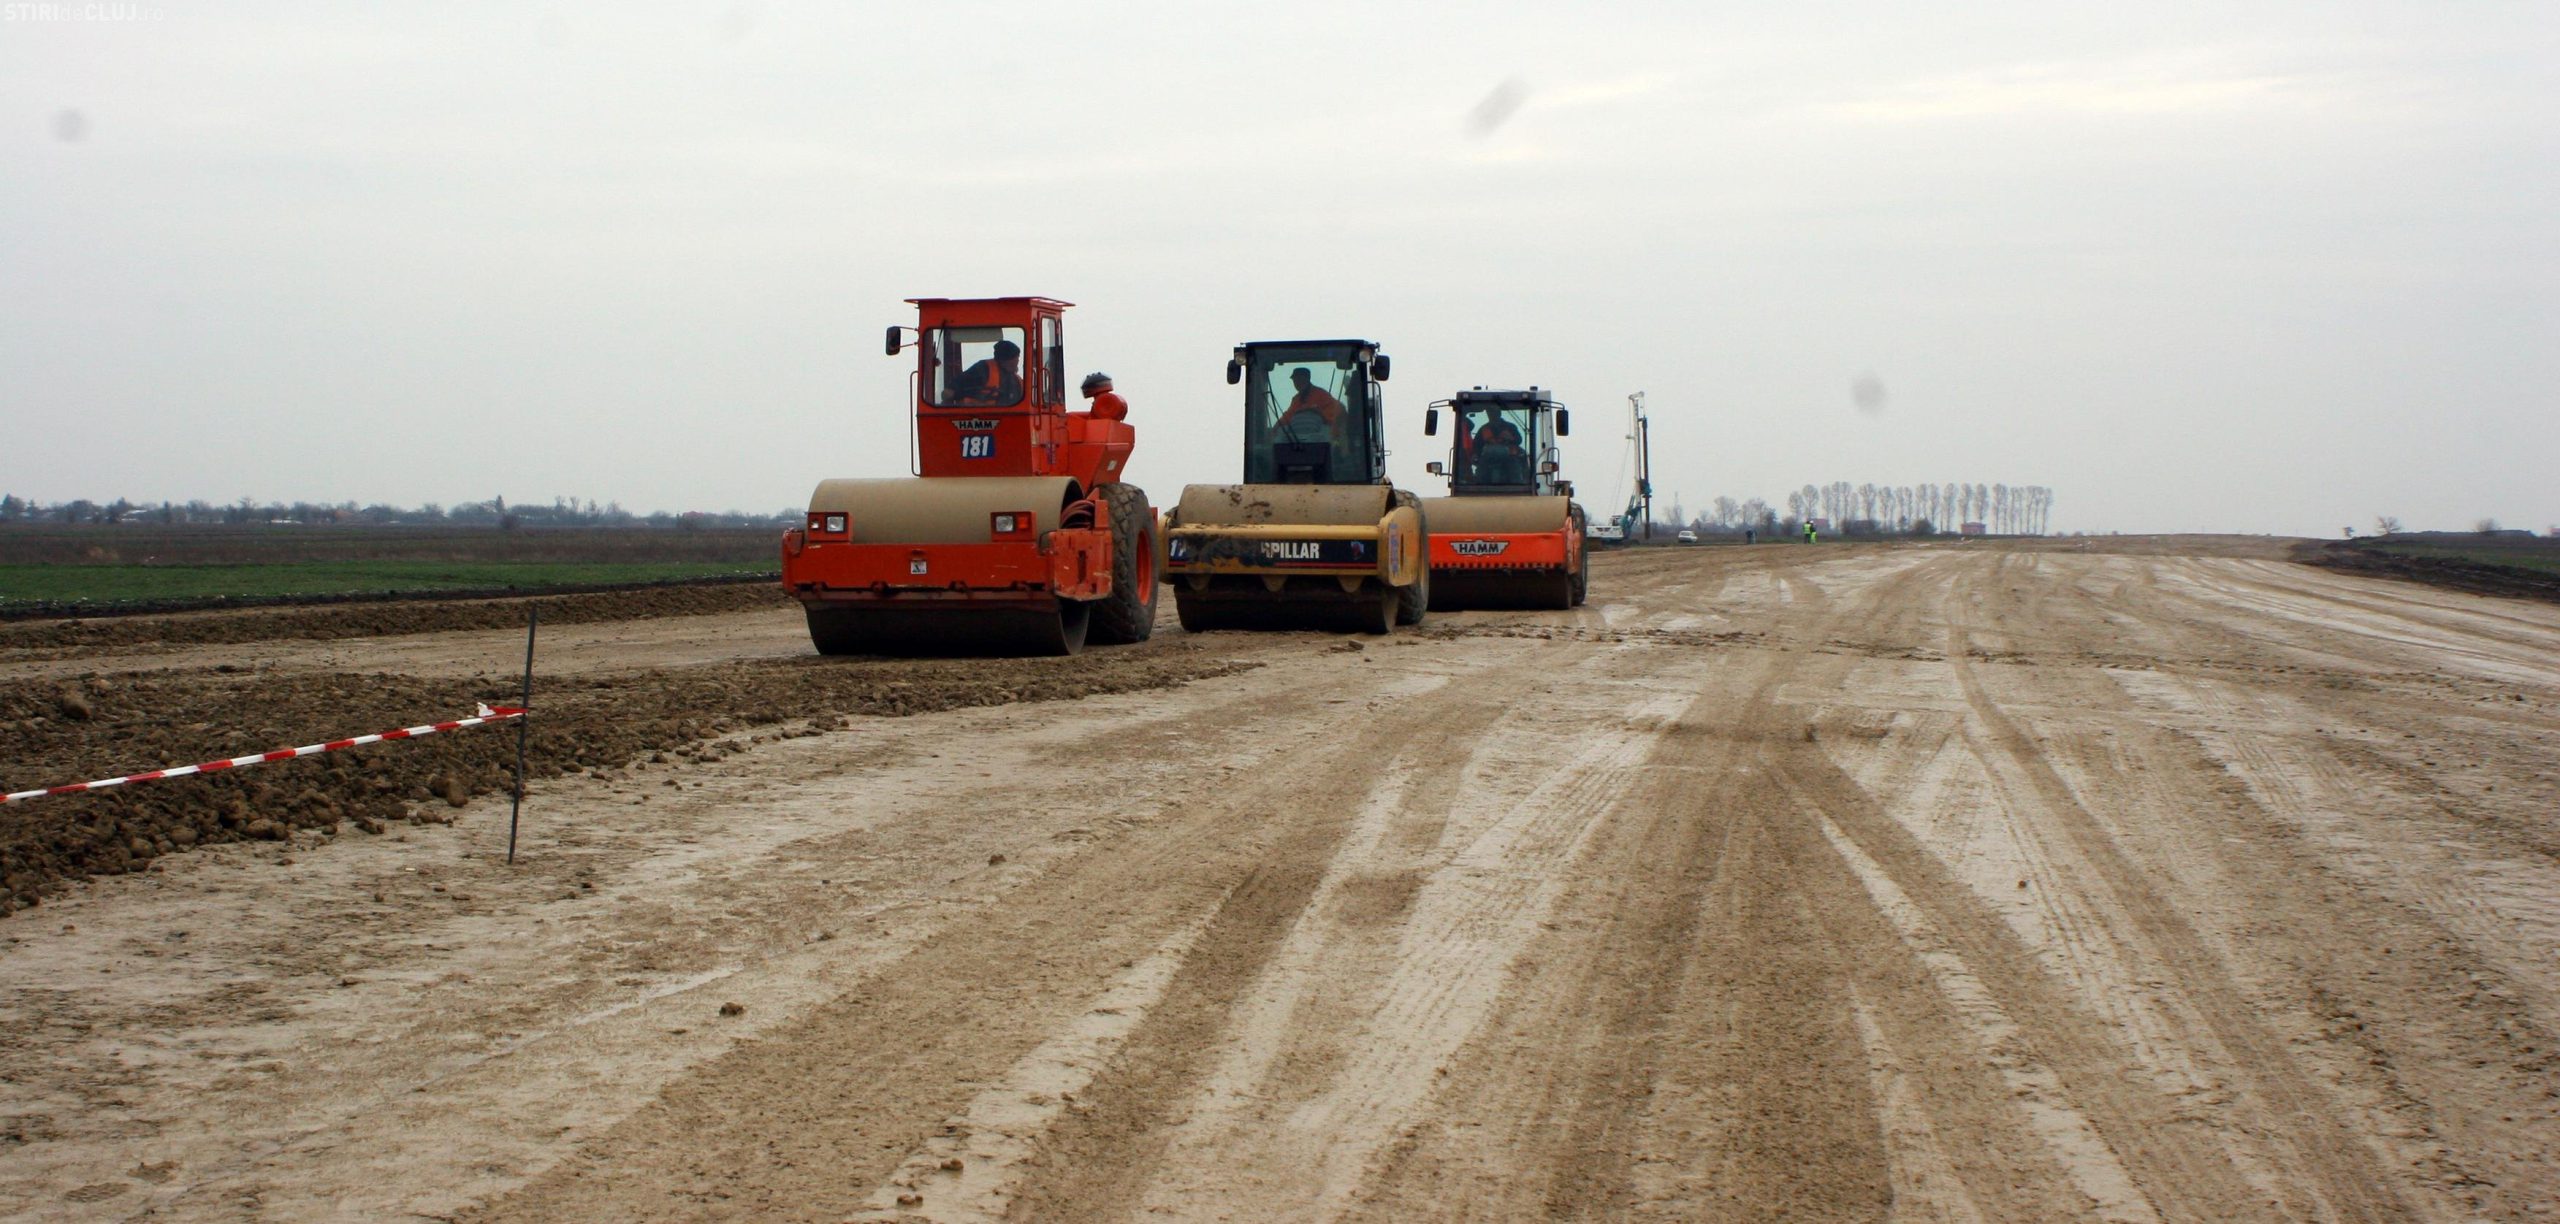  Patru companii se bat pentru contractul construirii autostrăzii Iaşi – Târgu Neamţ